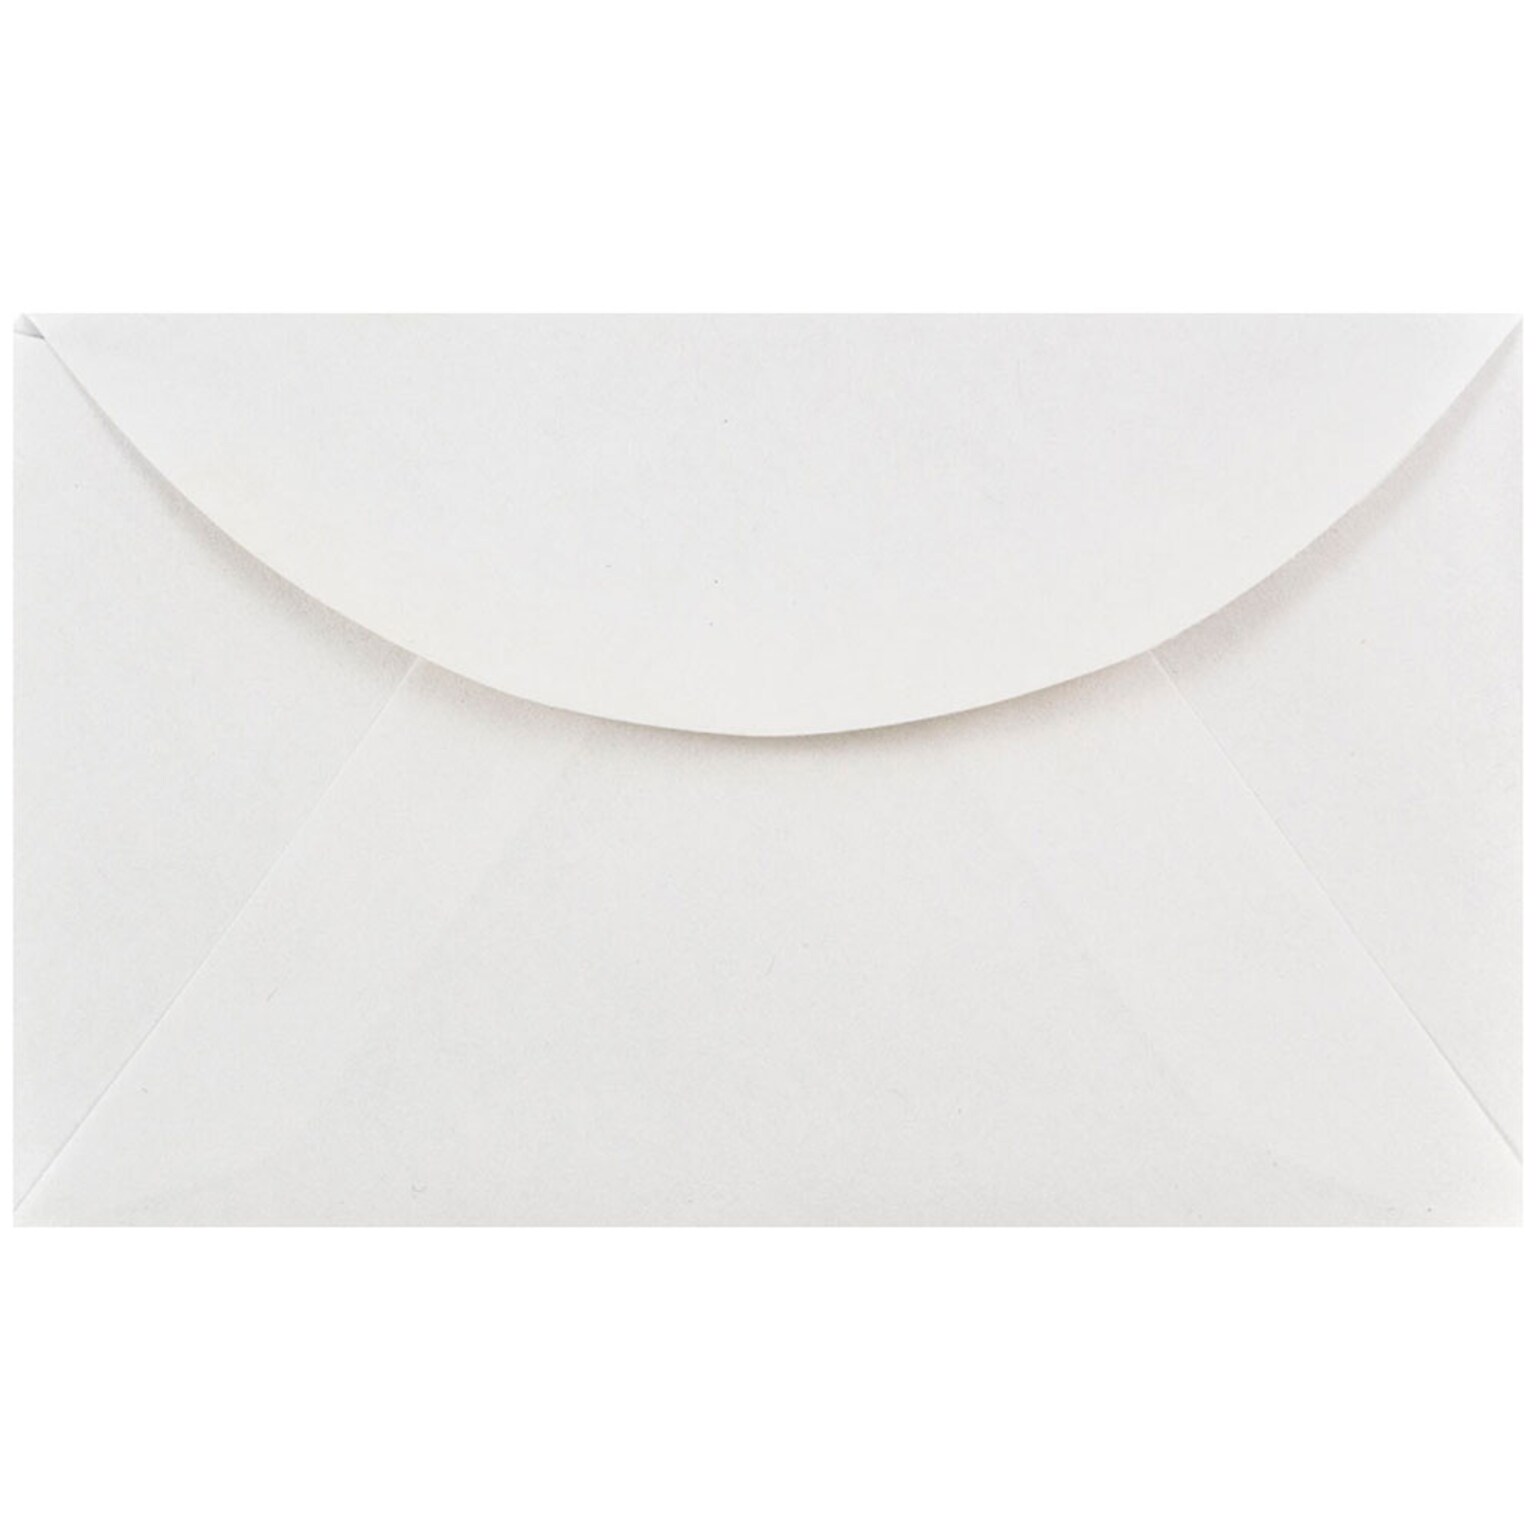 JAM PAPER Gummed 2Pay Mini Envelopes, 2 1/2 x 4 1/4, White, 100/Pack (201215a)